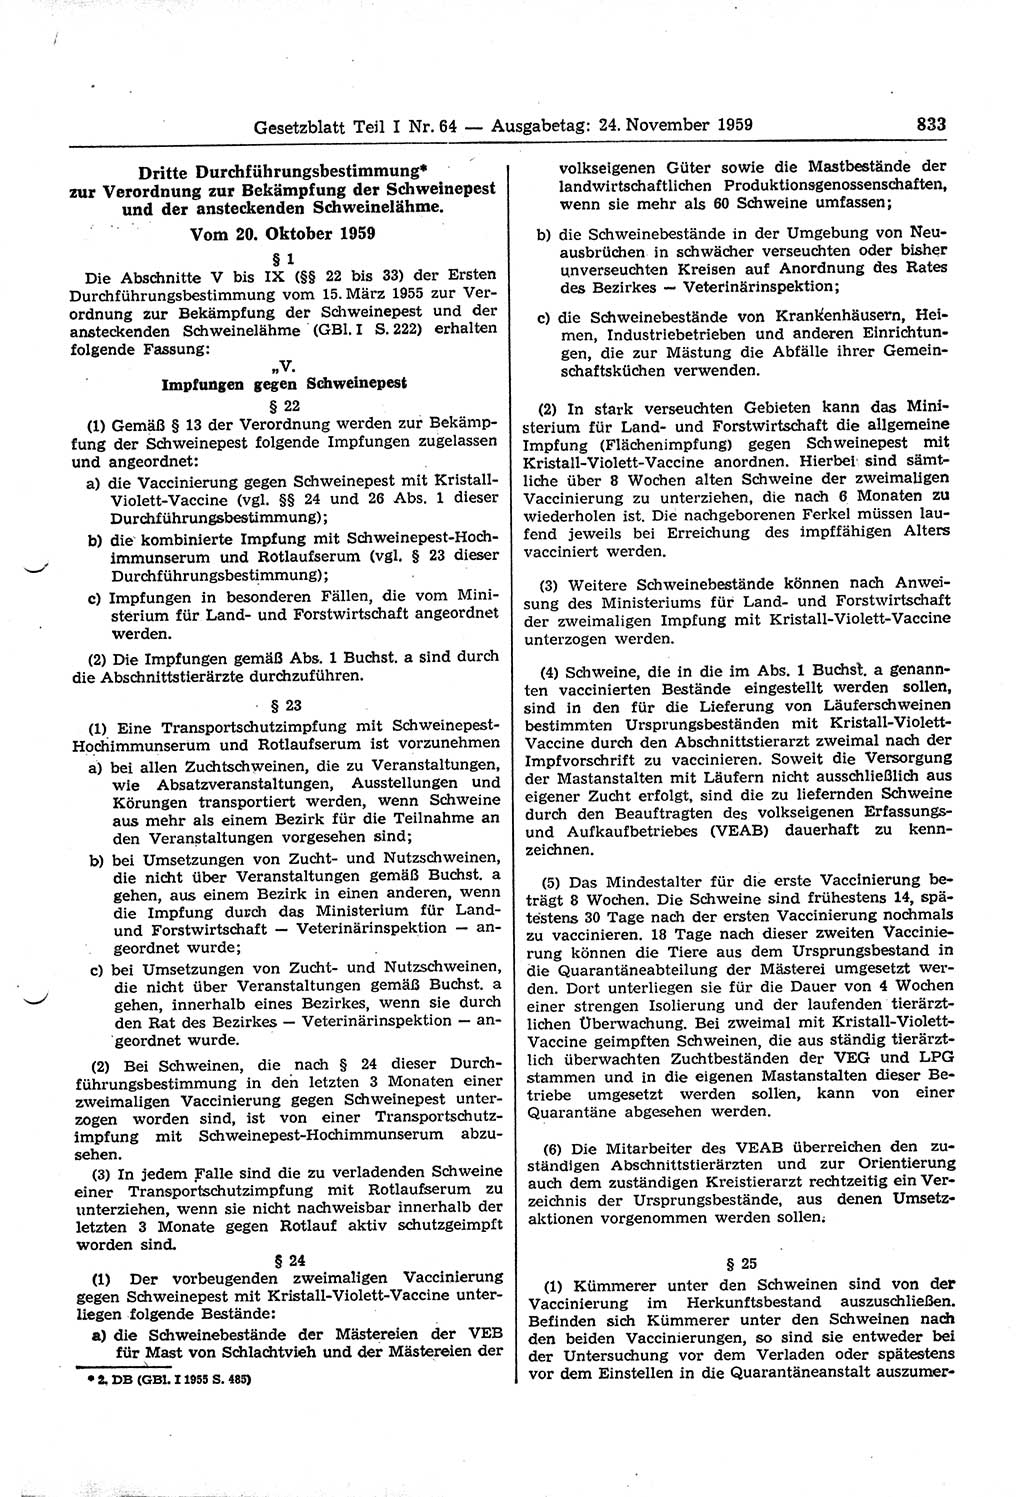 Gesetzblatt (GBl.) der Deutschen Demokratischen Republik (DDR) Teil Ⅰ 1959, Seite 833 (GBl. DDR Ⅰ 1959, S. 833)